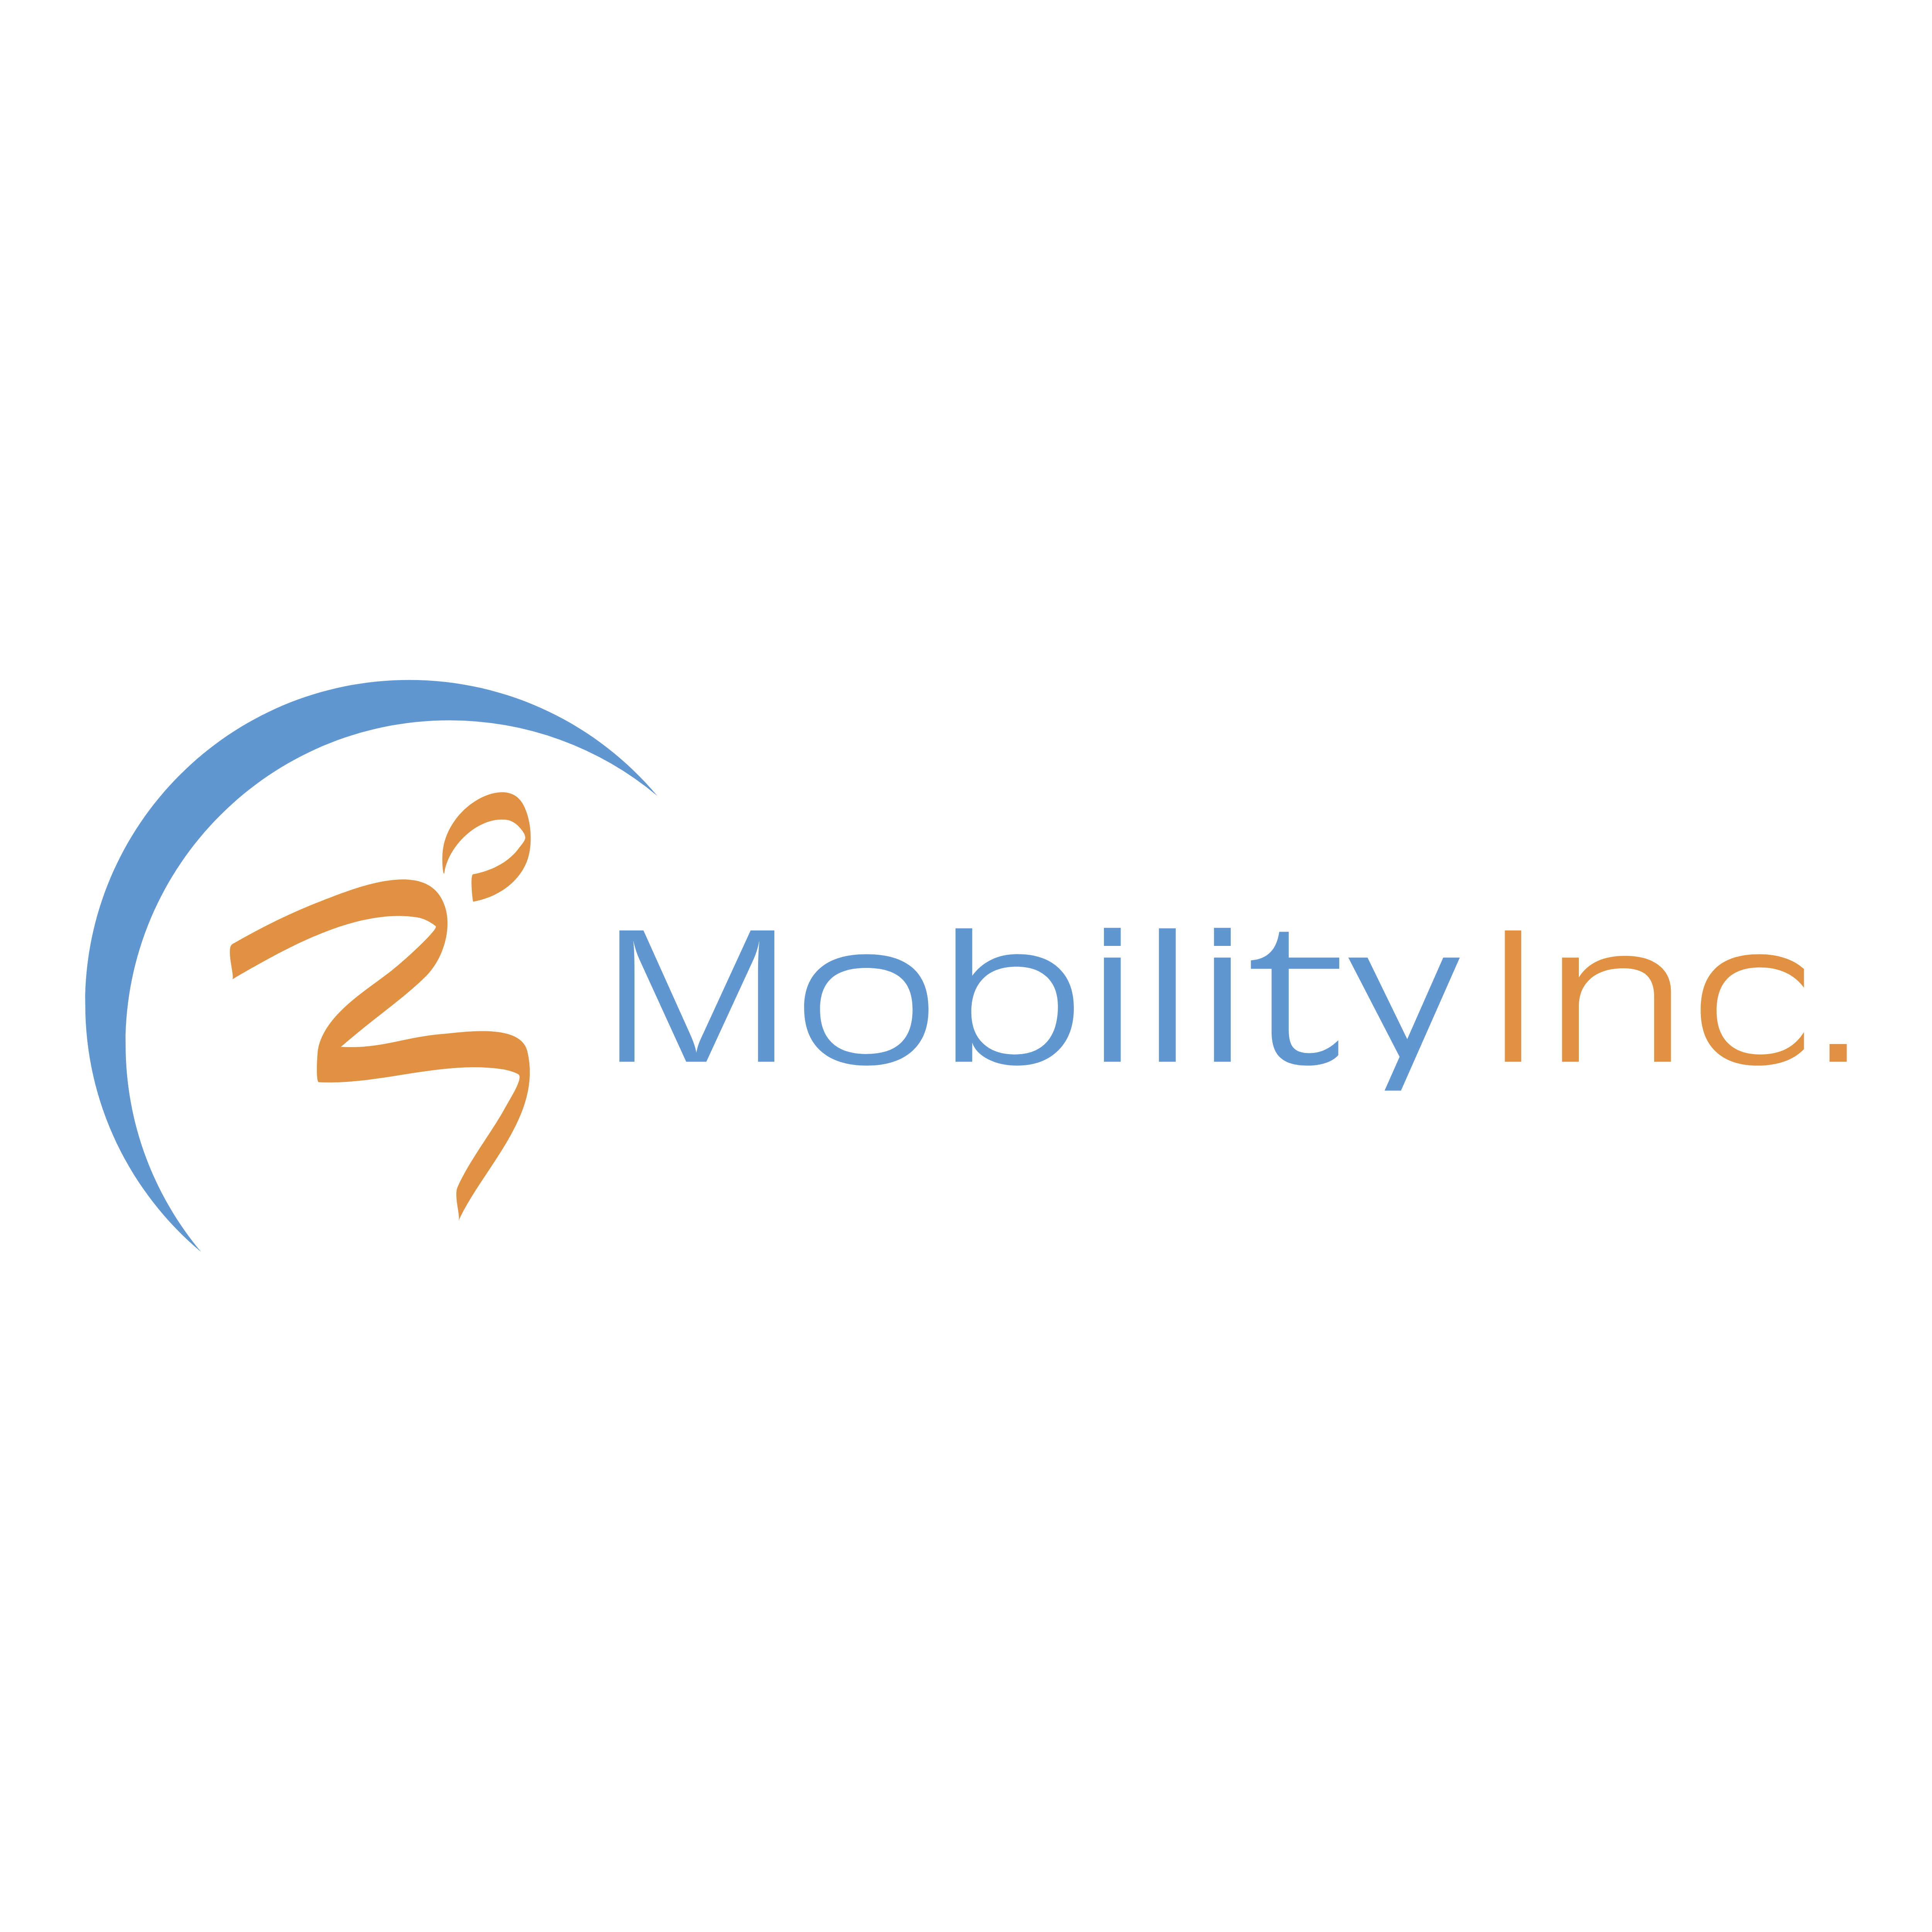 A M Mobility Logo - Mobility – Logos Download